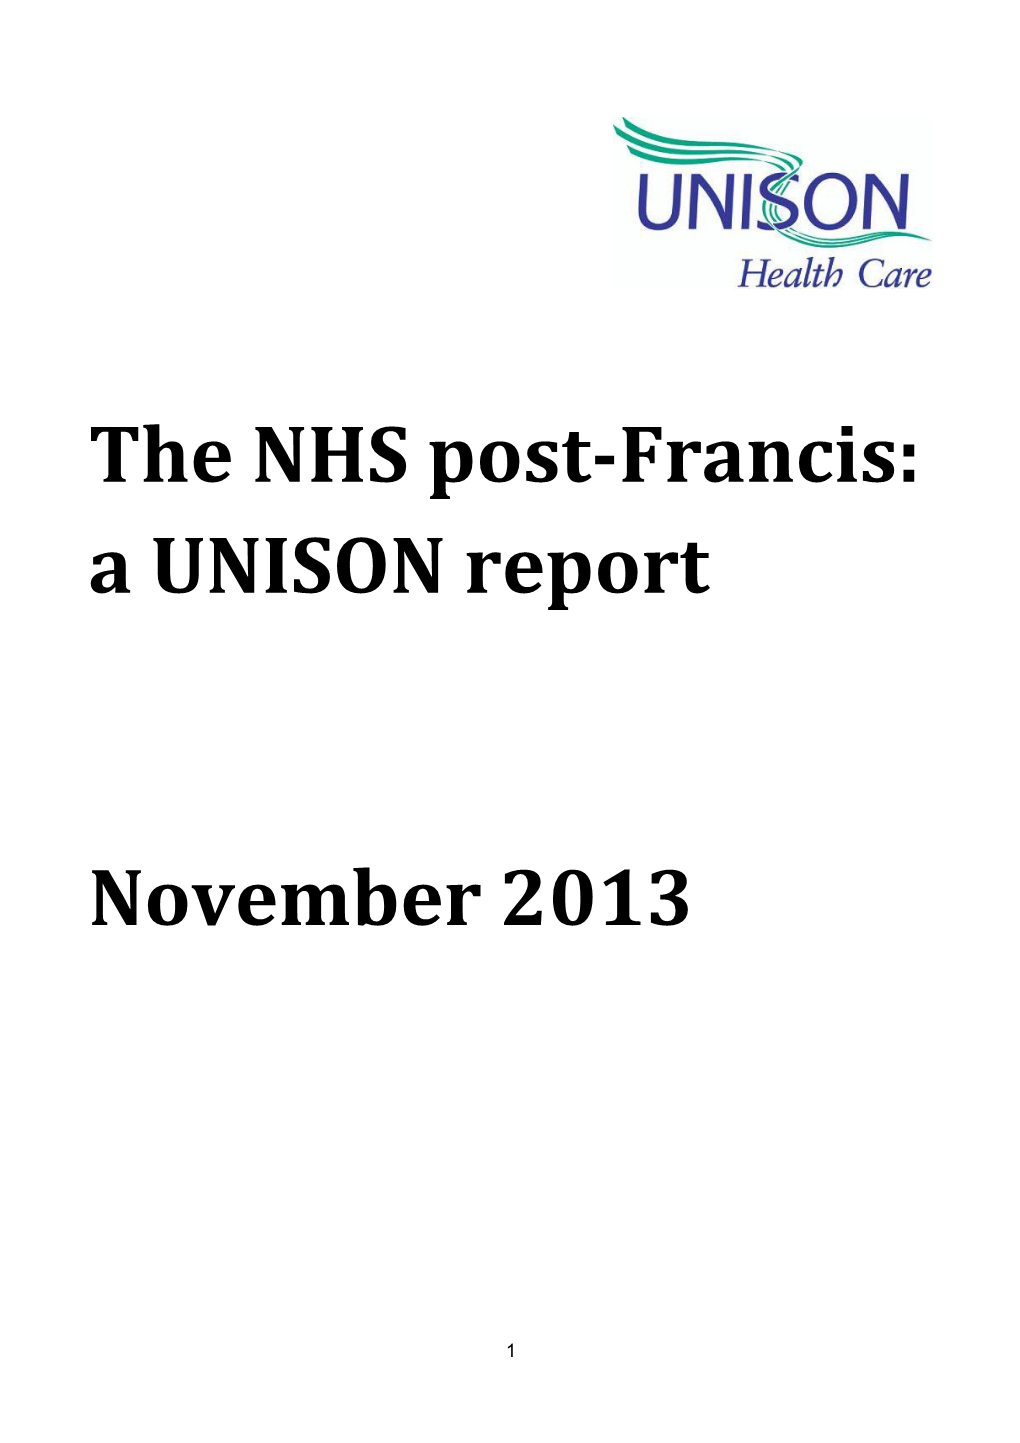 Francis UNISON Response Nov 2013